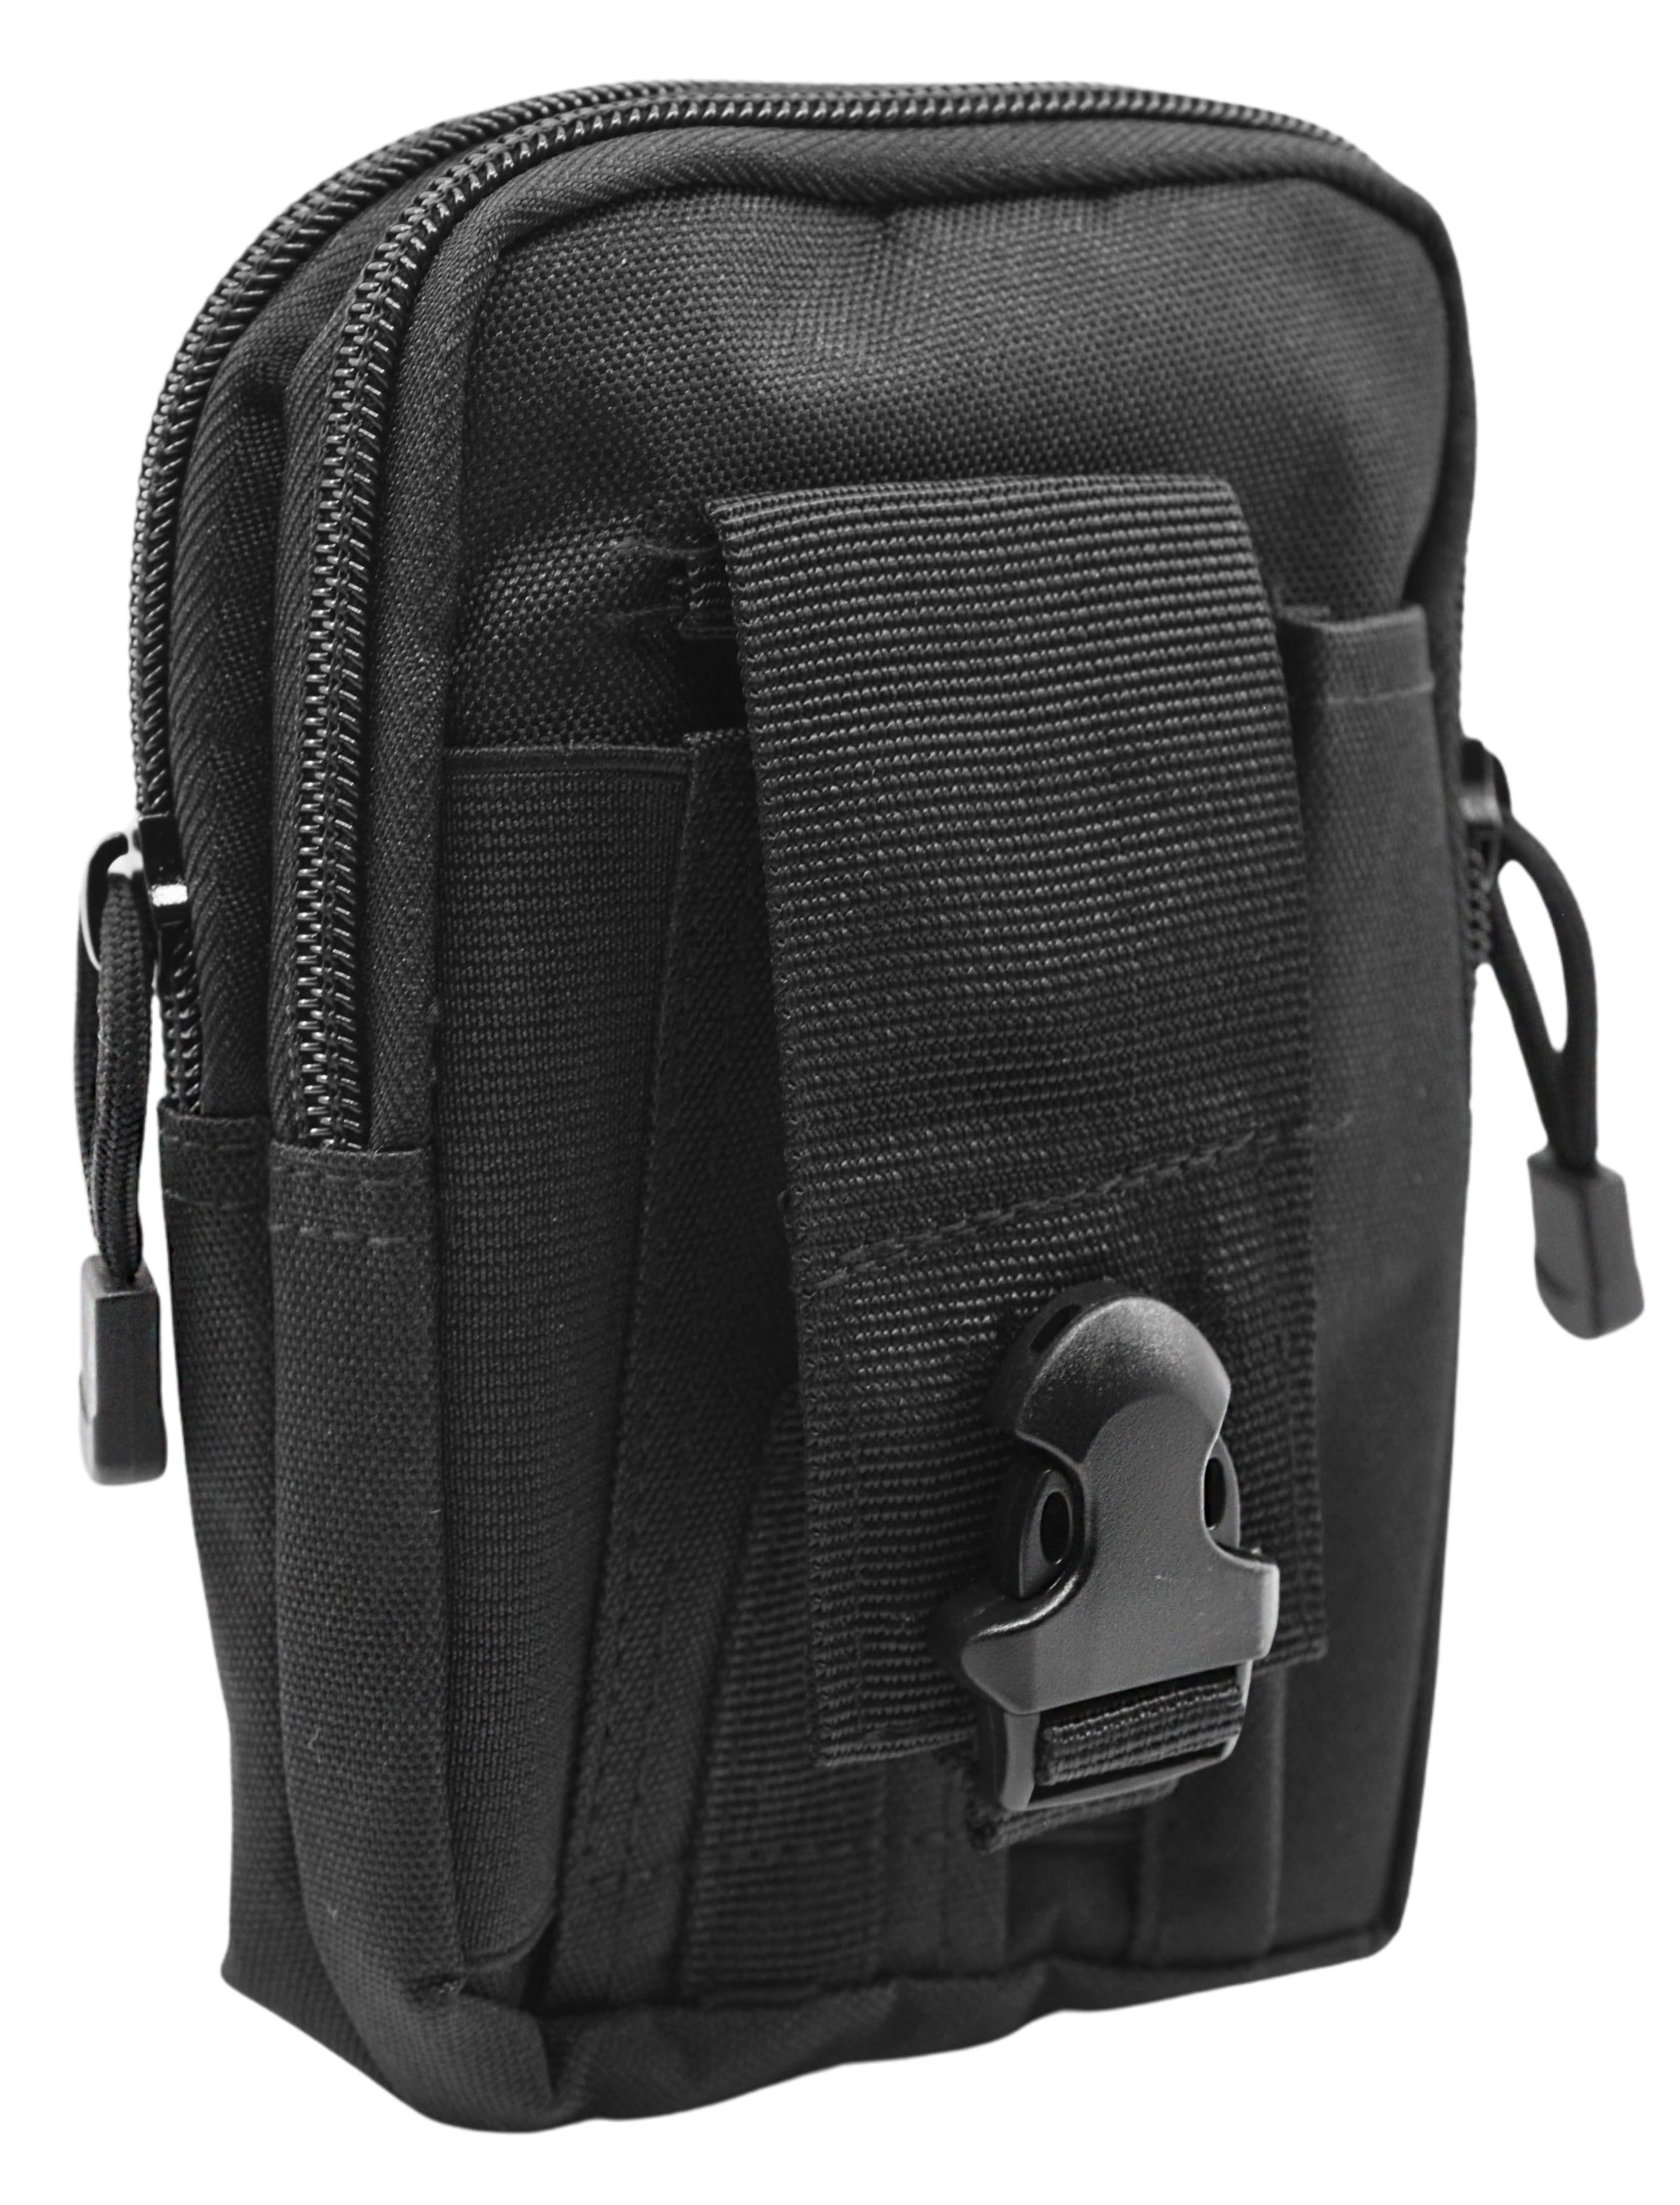 SPITBOARDS Fingerboard Bag - Travel Carry Fingerskate Bag (schwarz)